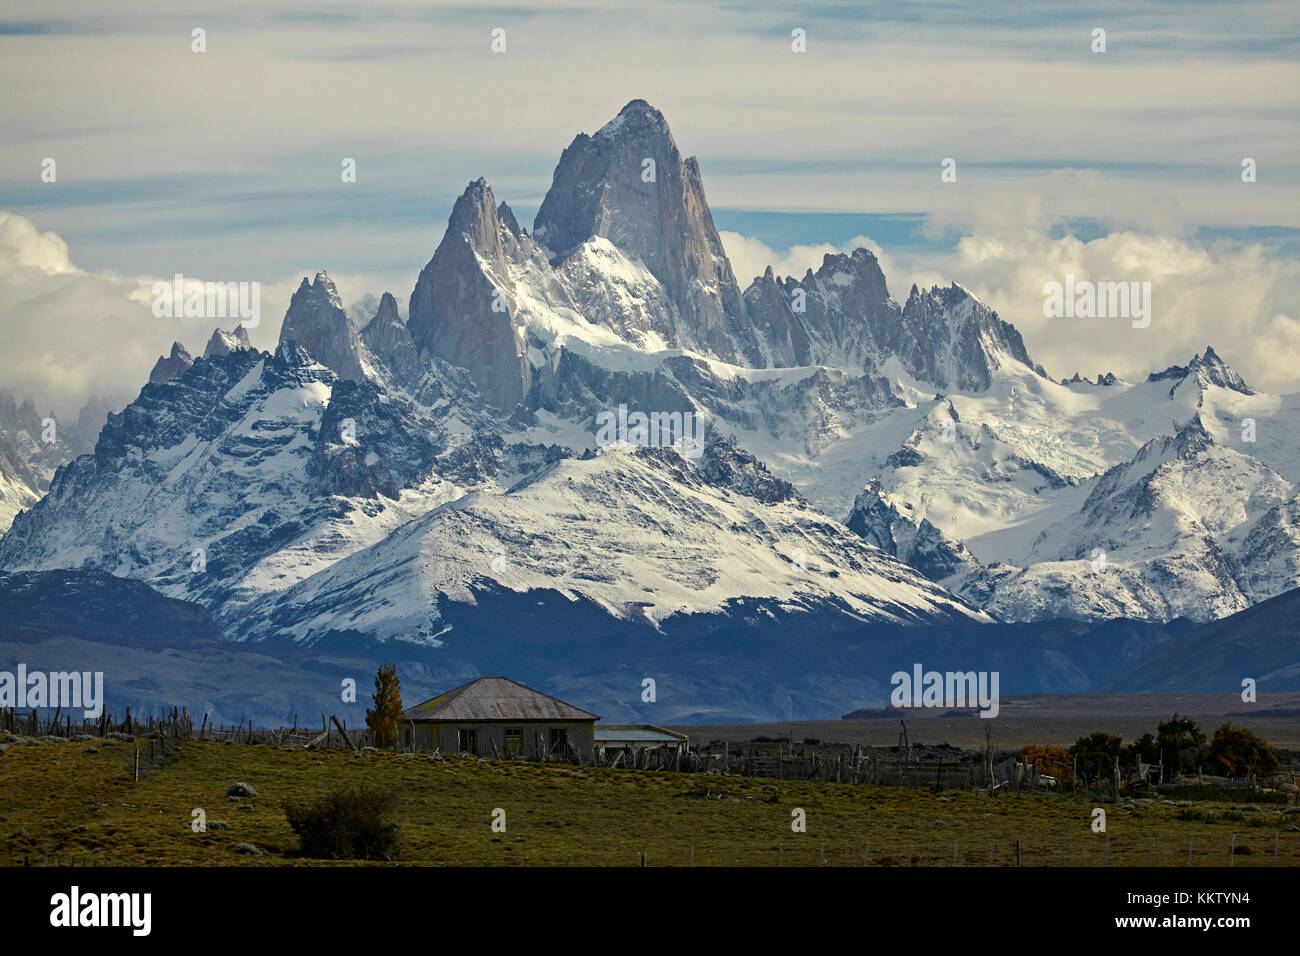 Mount Fitz Roy, Parque Nacional Los Glaciares (Welterbe) und Bauernhaus, Patagonien, Argentinien, Südamerika Stockfoto